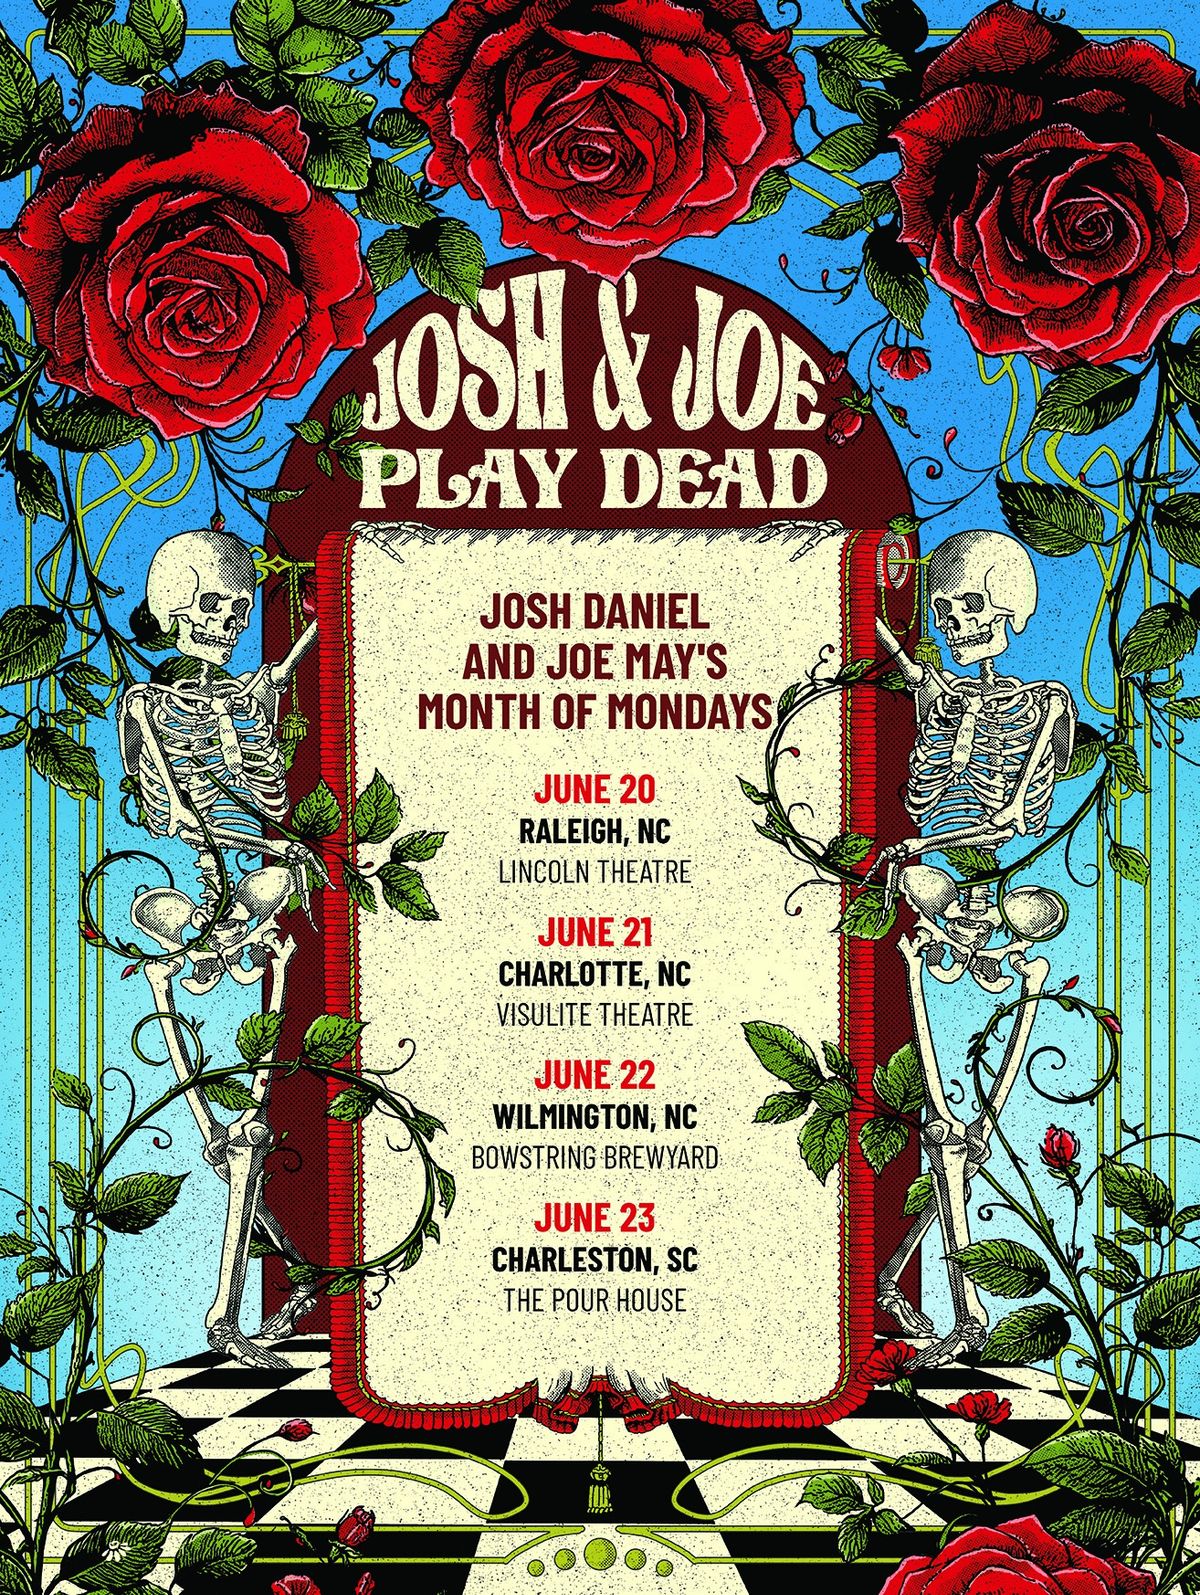 Josh & Joe Play Dead